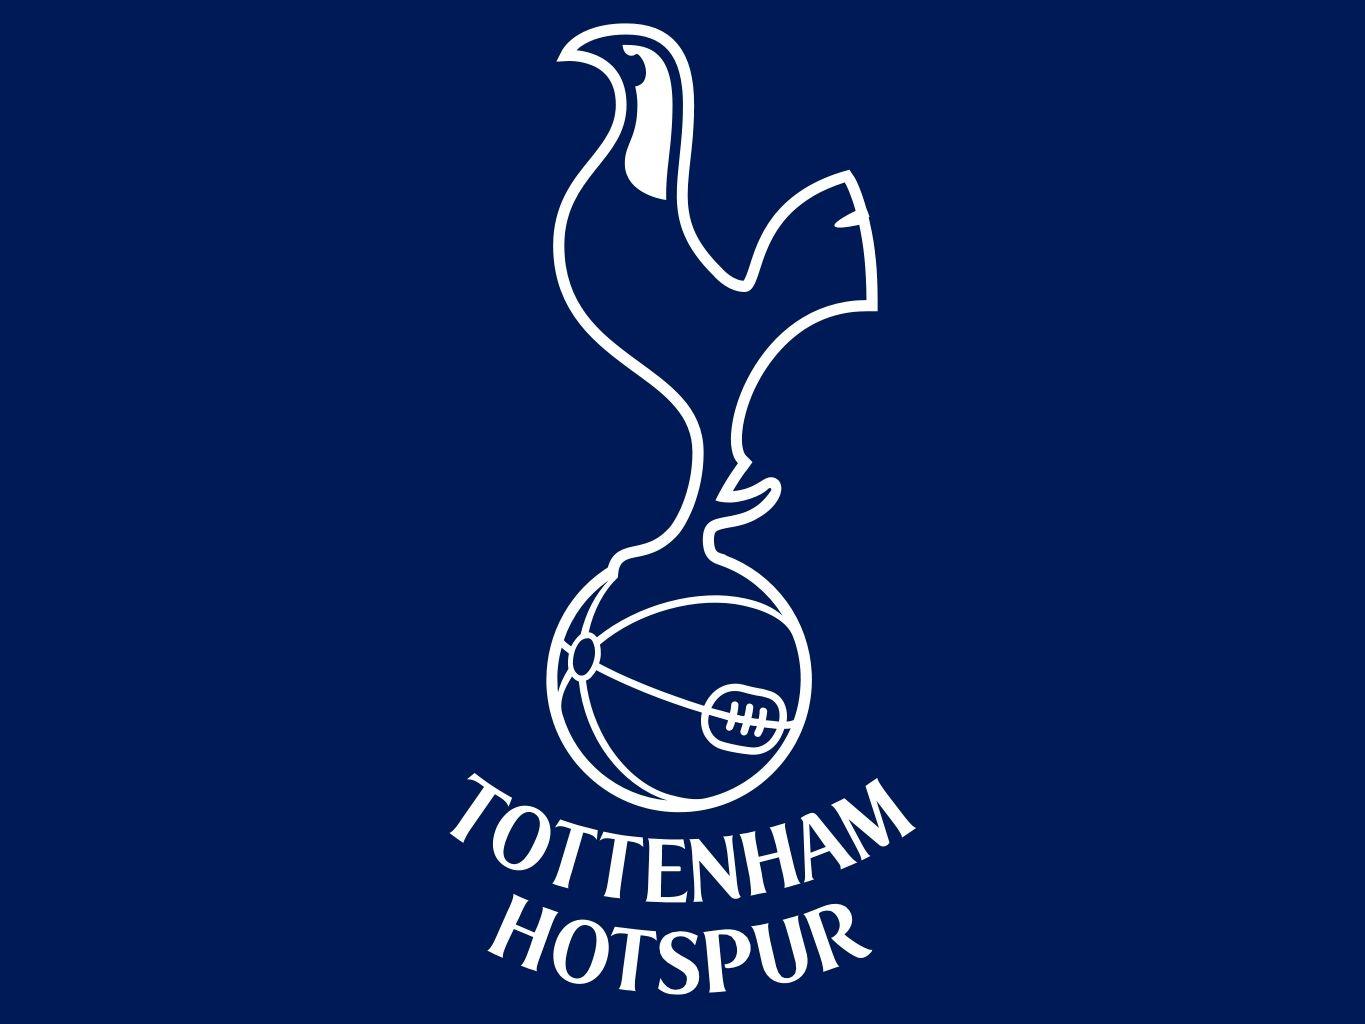 Tottenham Hotspurs 2017 Season Review